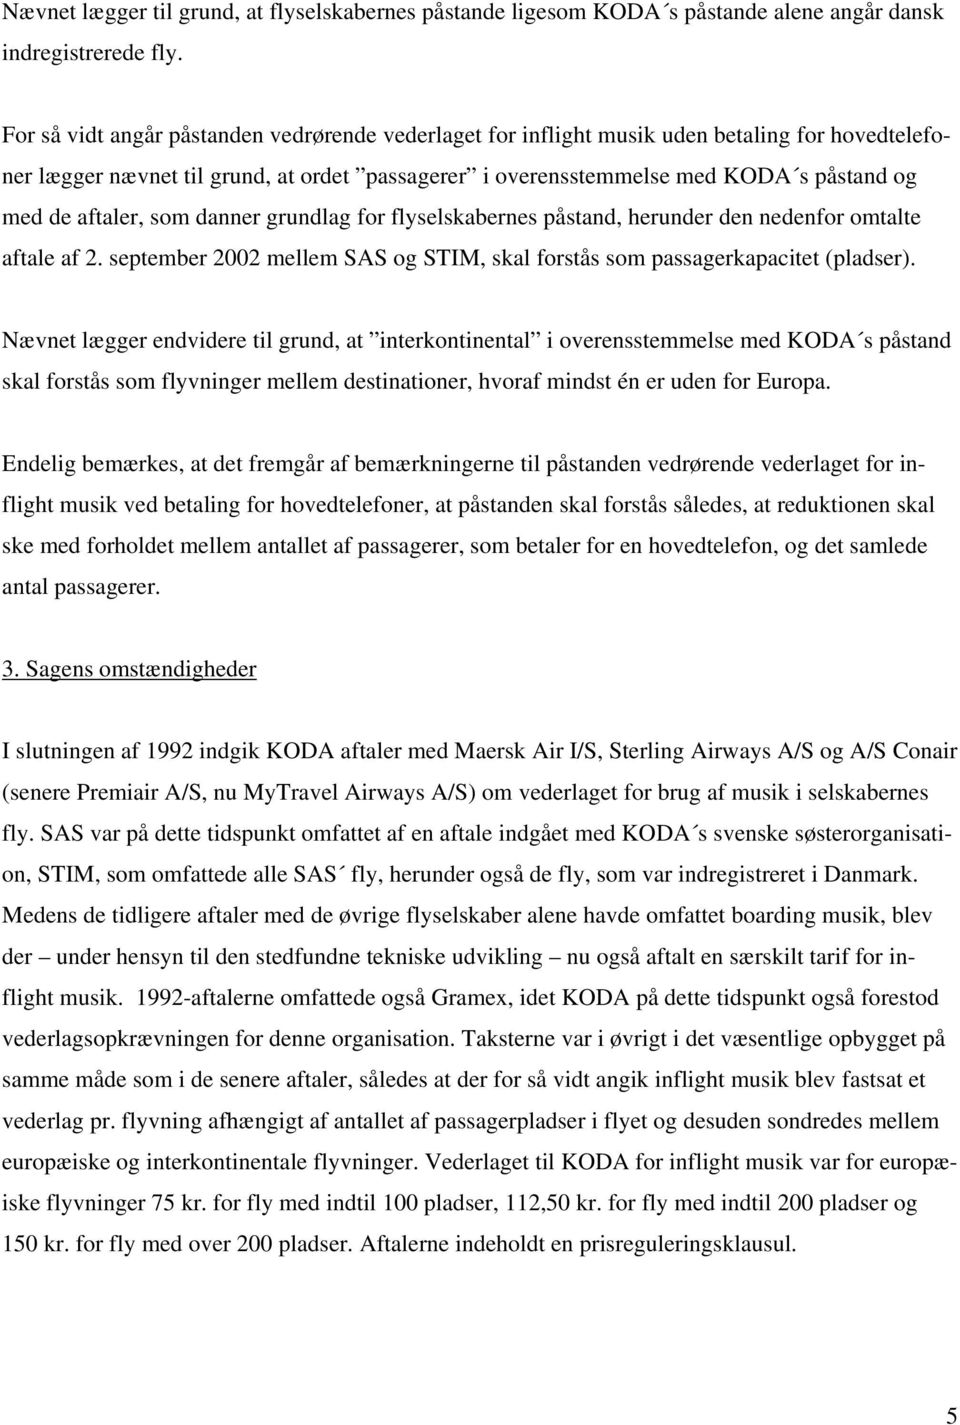 aftaler, som danner grundlag for flyselskabernes påstand, herunder den nedenfor omtalte aftale af 2. september 2002 mellem SAS og STIM, skal forstås som passagerkapacitet (pladser).